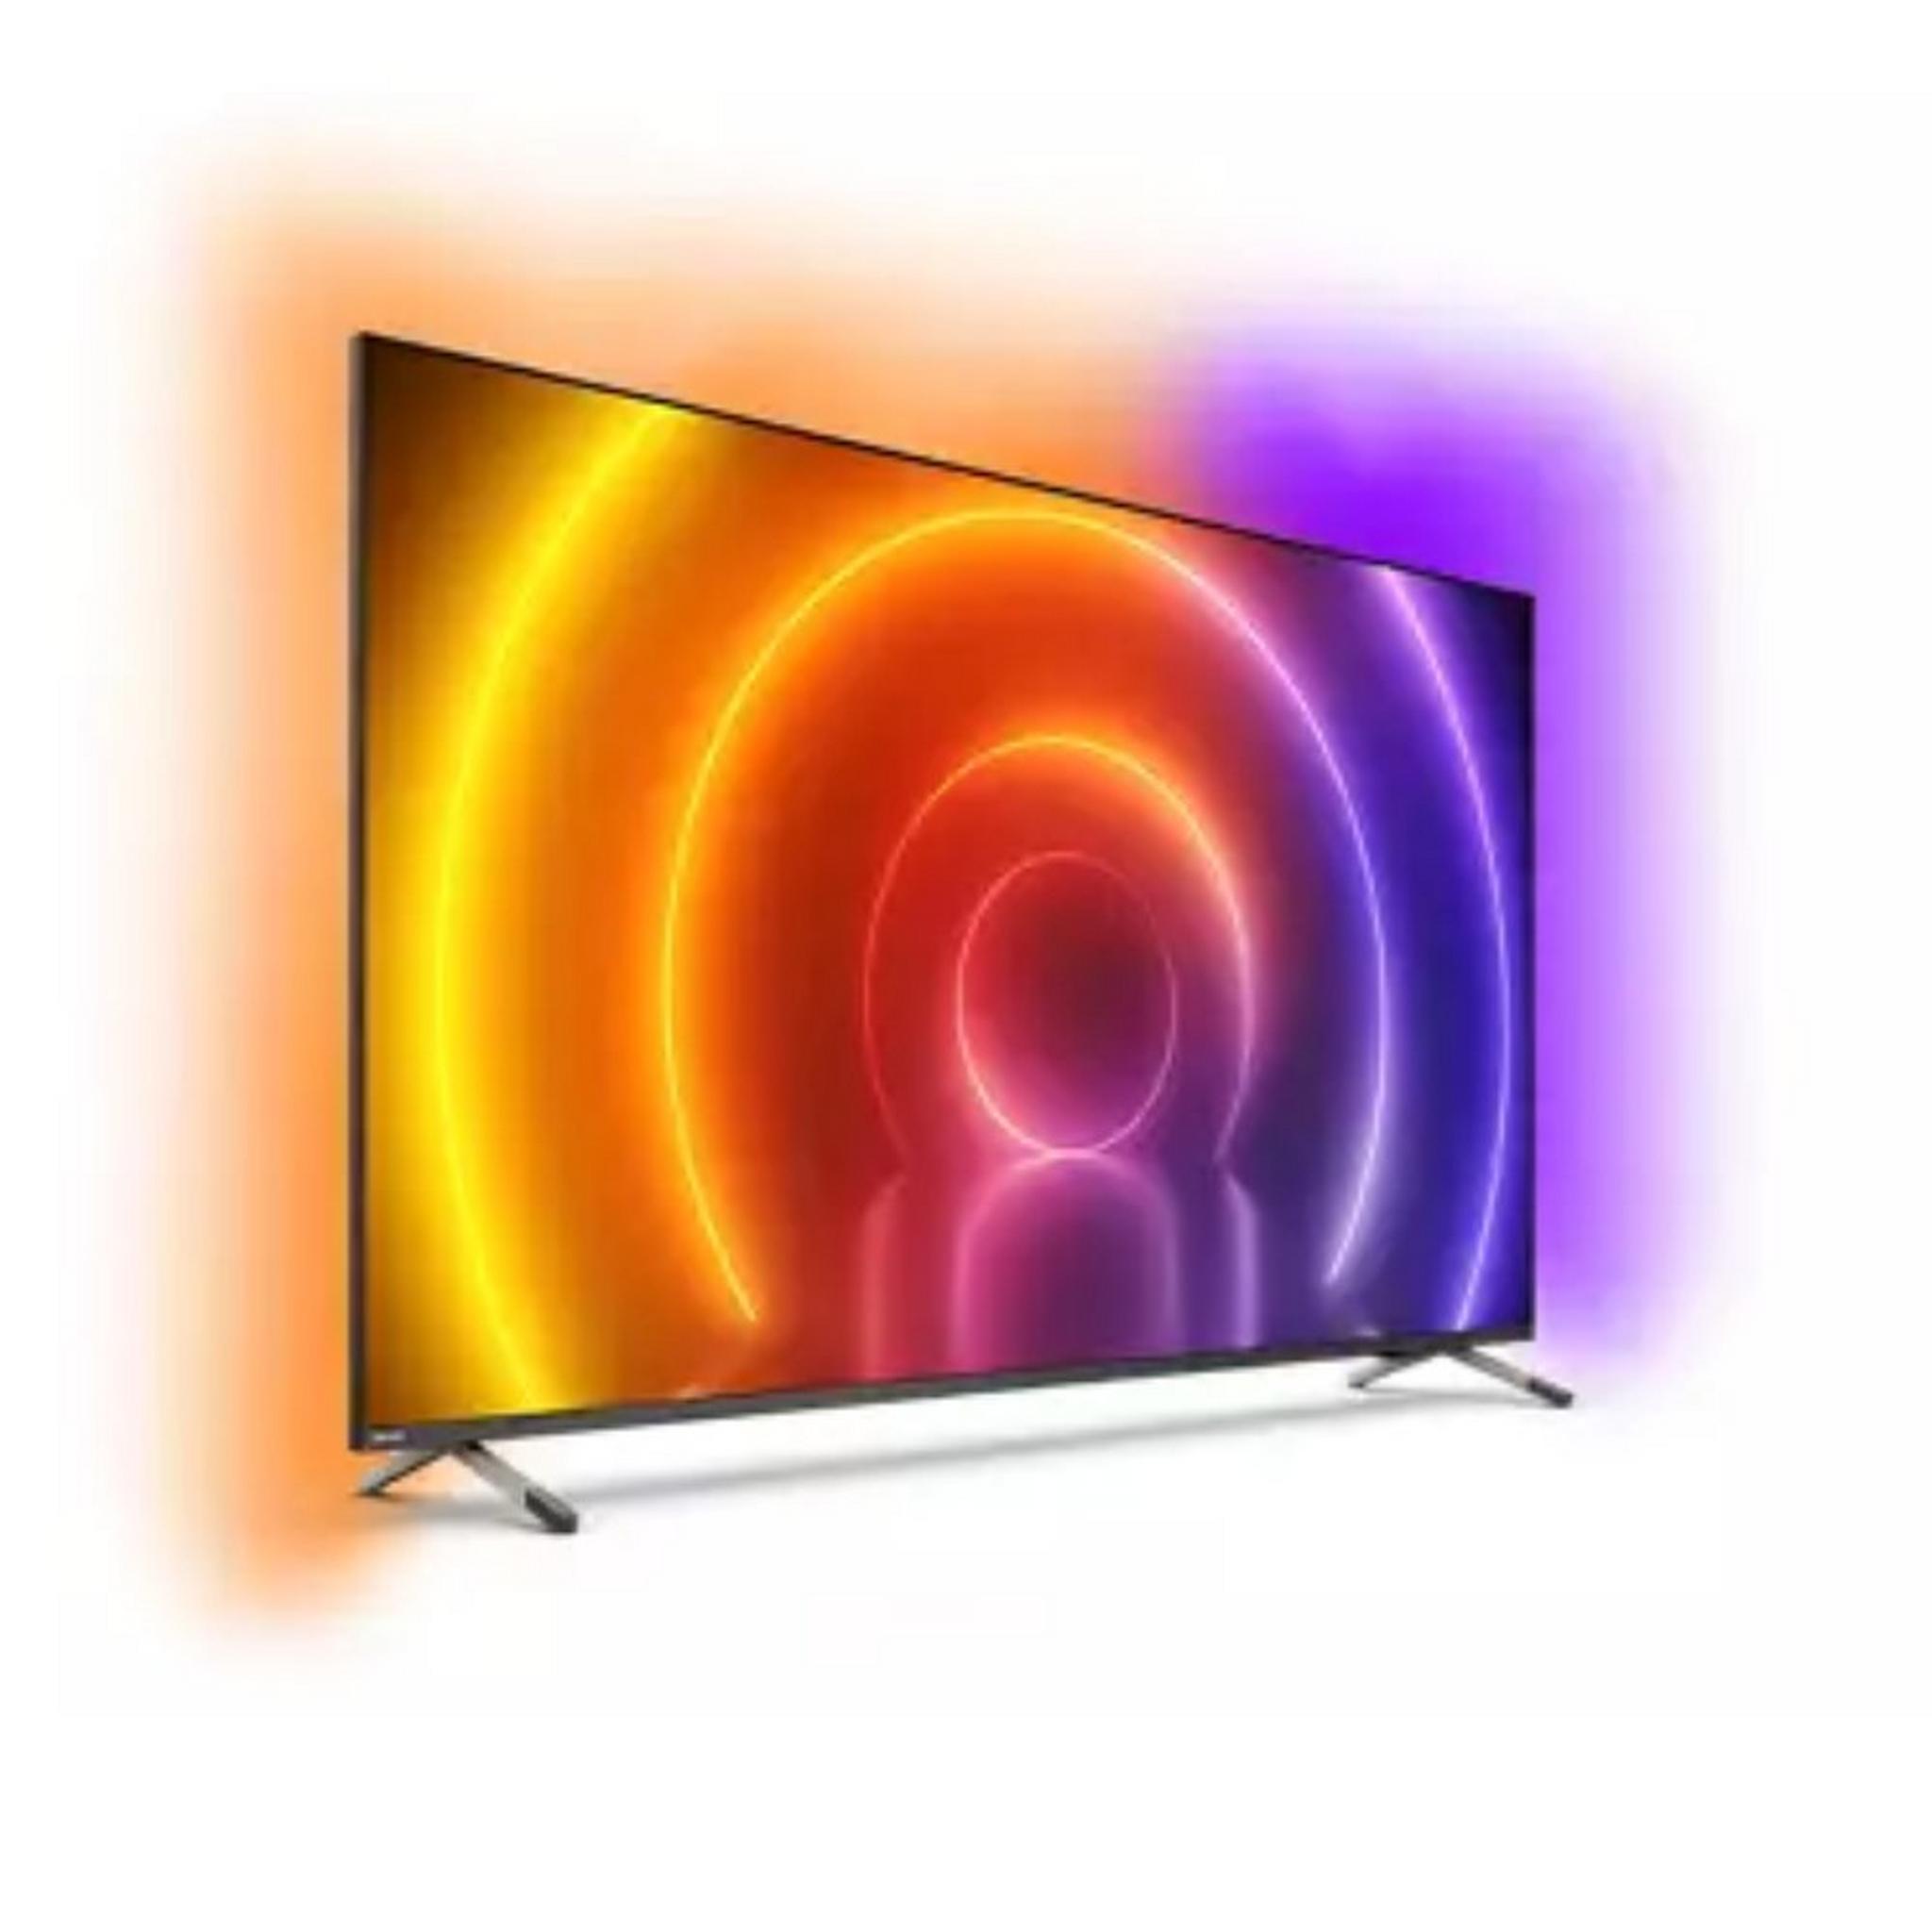 تلفزيون فيلبس 4 كي فائق الوضوح ال اي دي أندرويد بحجم 50 بوصة (50PUT8516/56)